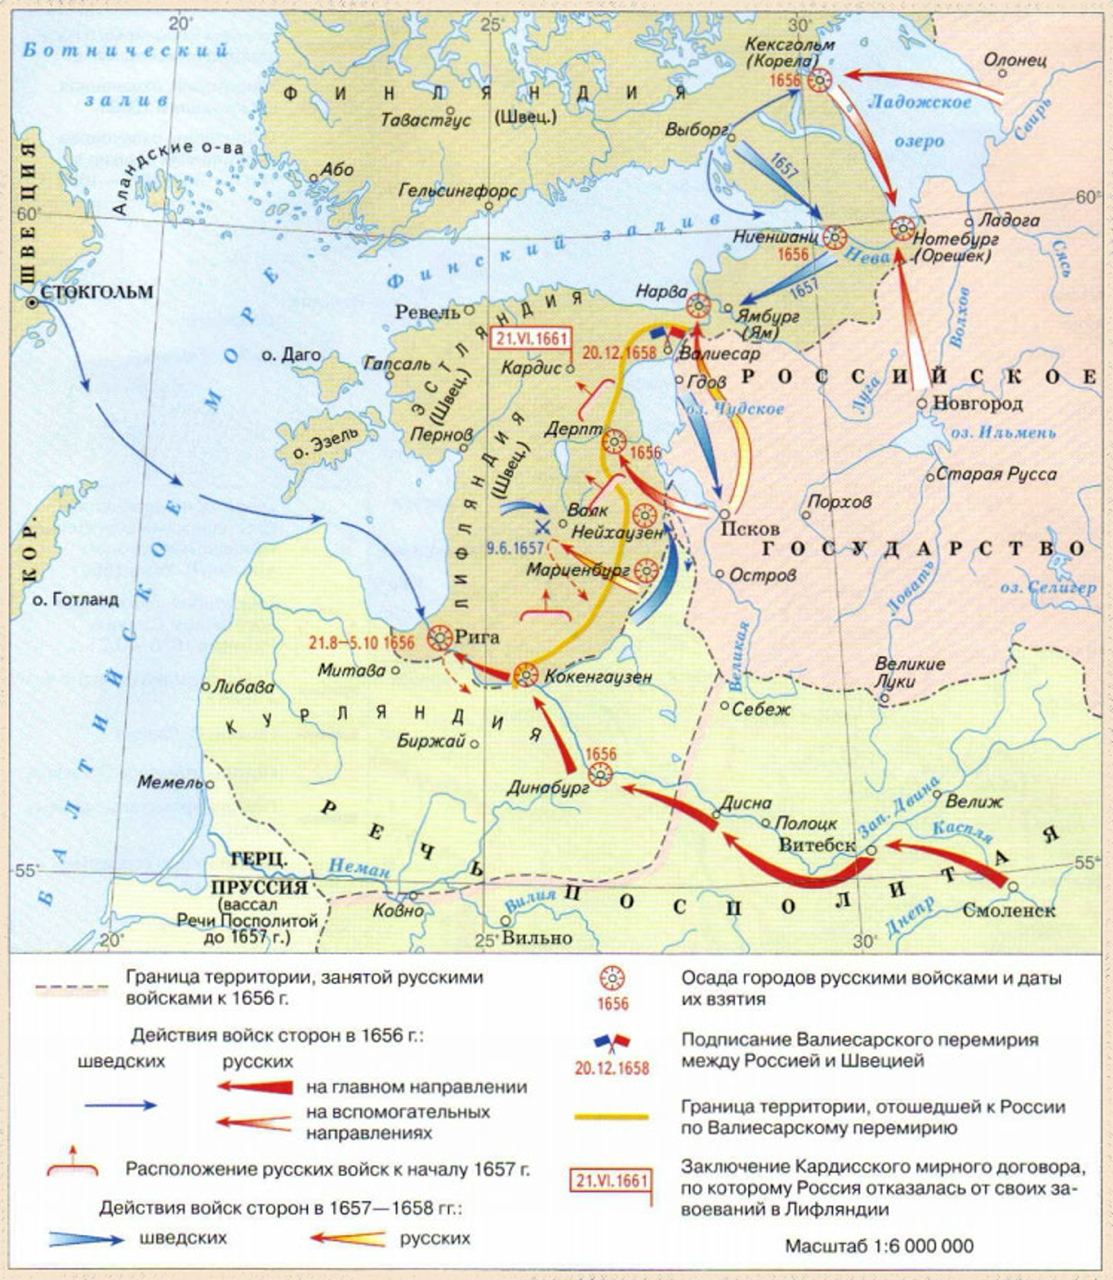 Карта русско-шведской войны с указанием главных направлений движения русских и шведских войск